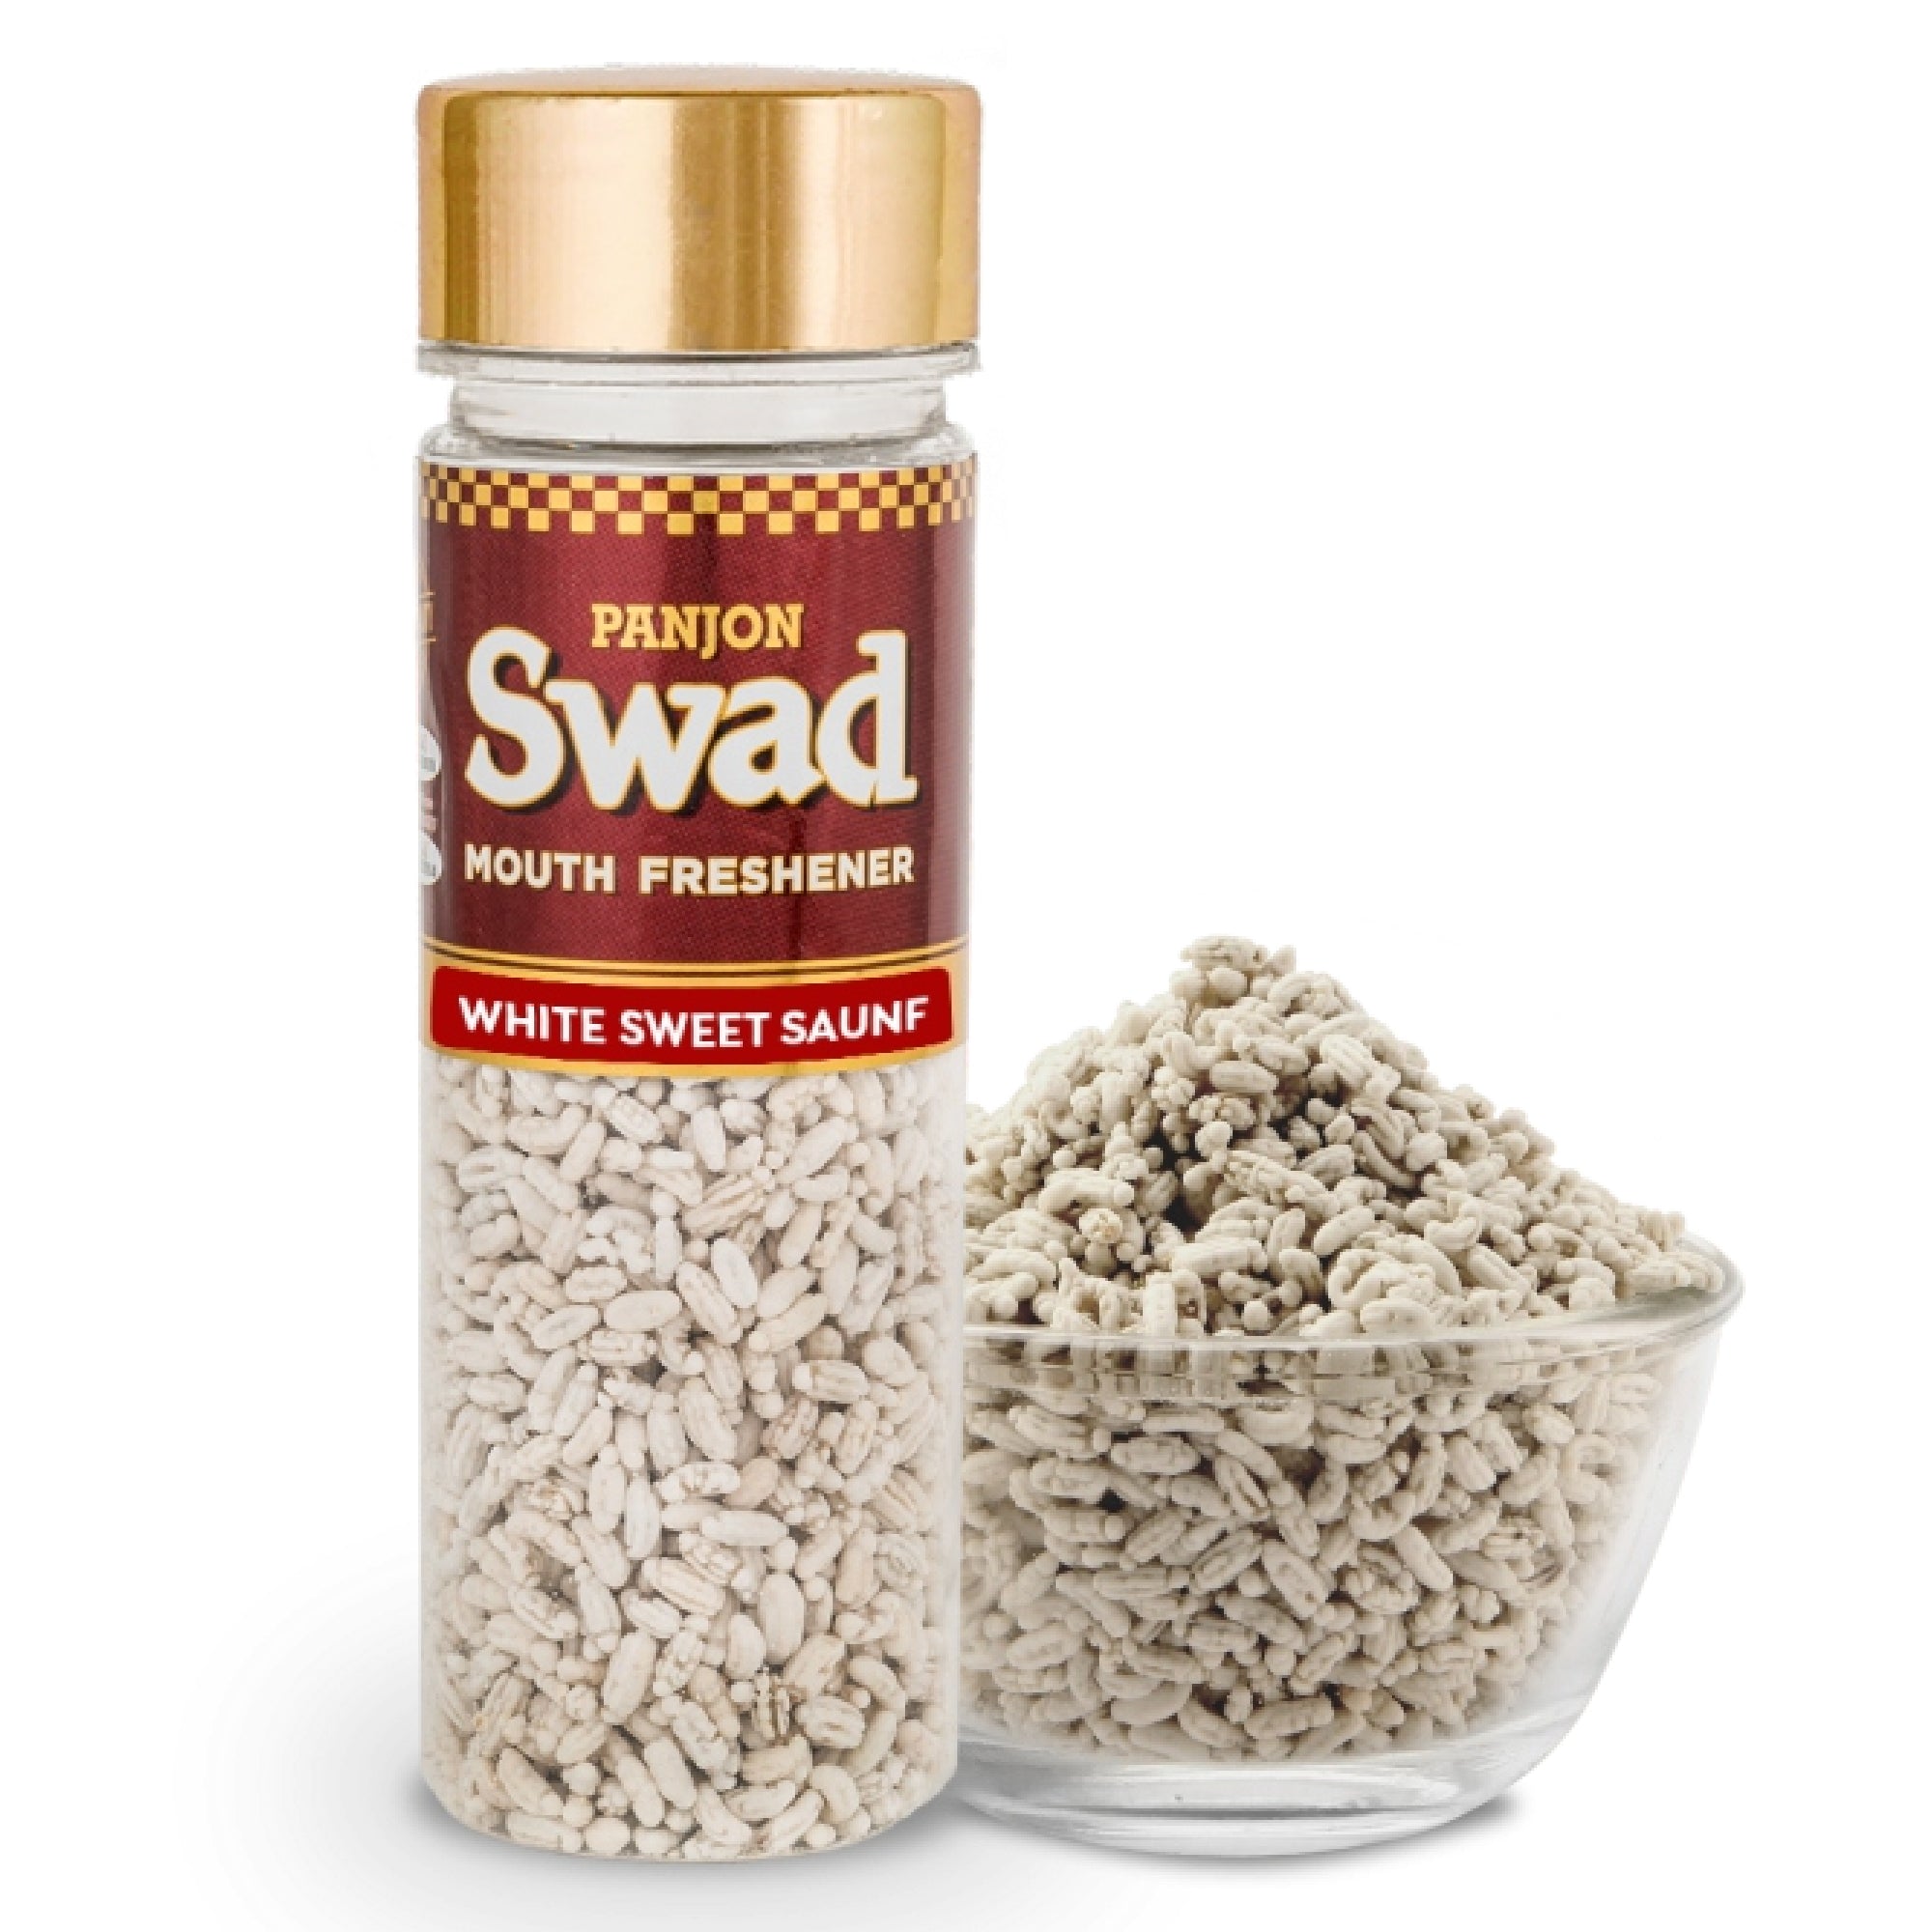 Swad White Sweet Saunf Mukhwas Mouth Freshener Bottle, 120 g